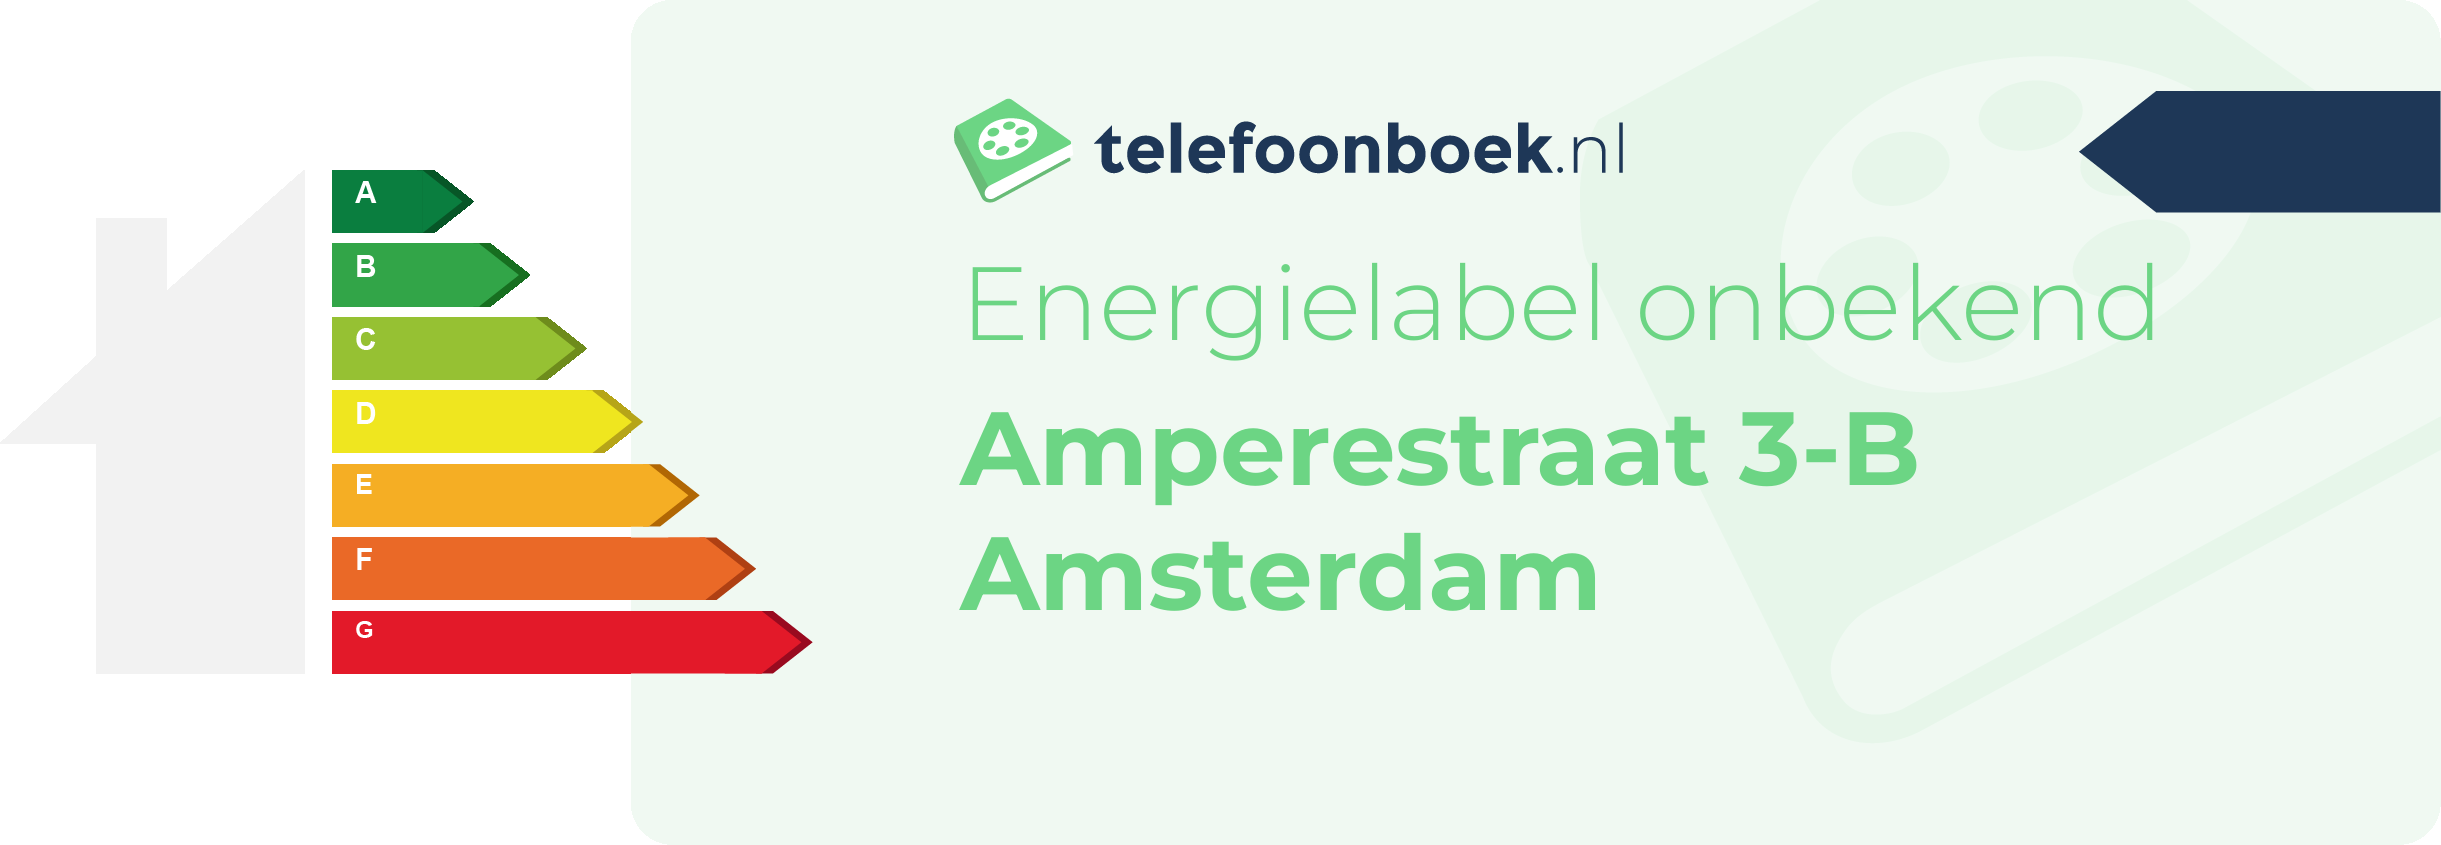 Energielabel Amperestraat 3-B Amsterdam